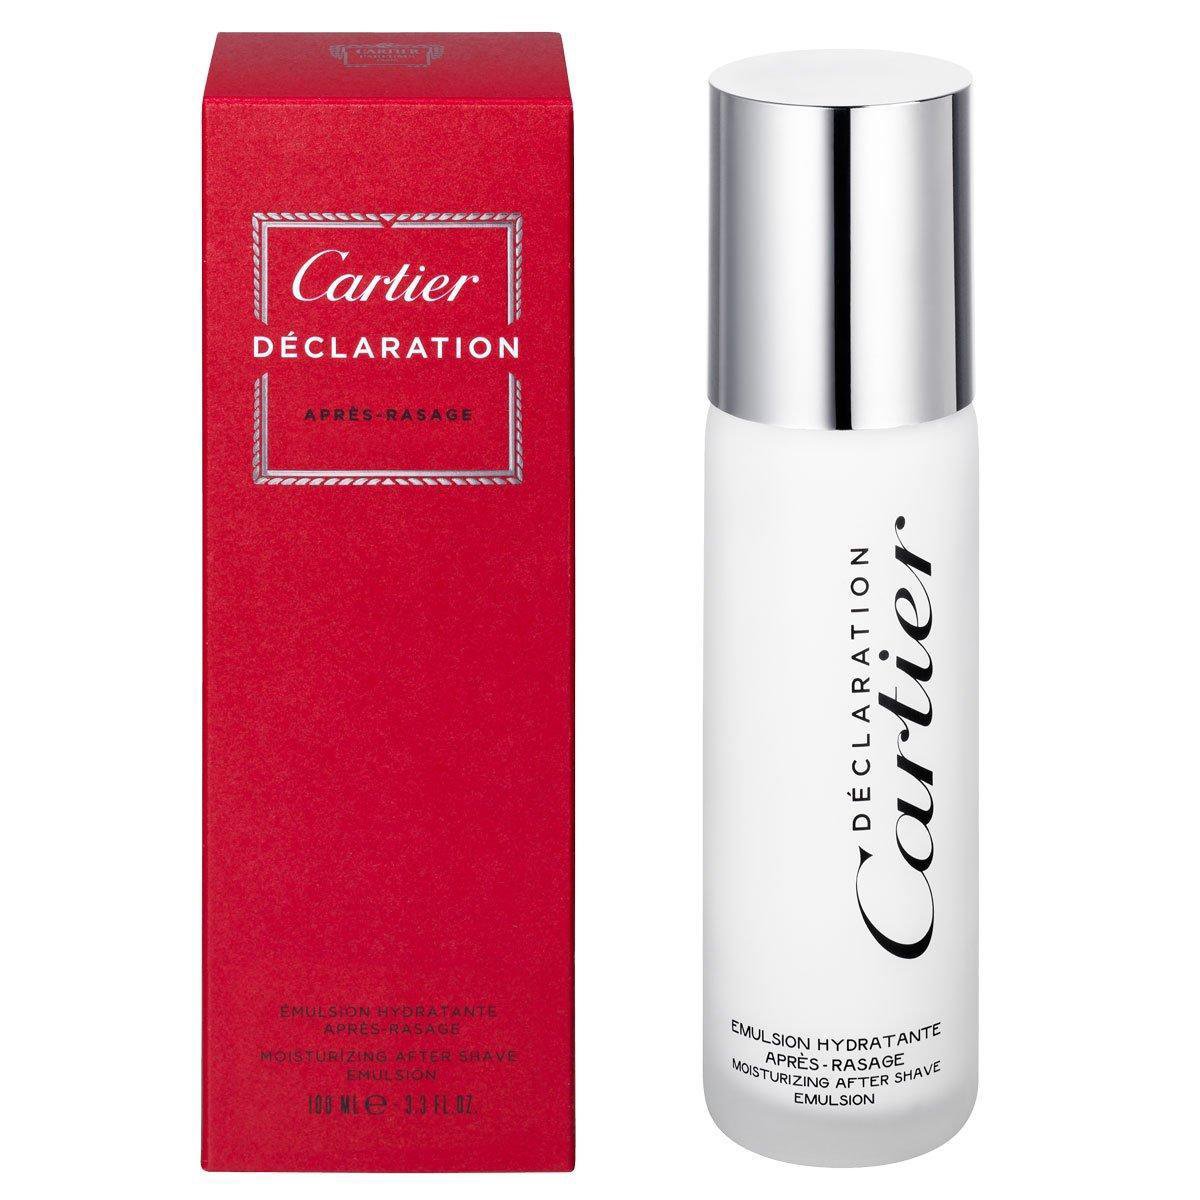 Cartier Déclaration after-shave 100 ml Aloé | bol.com